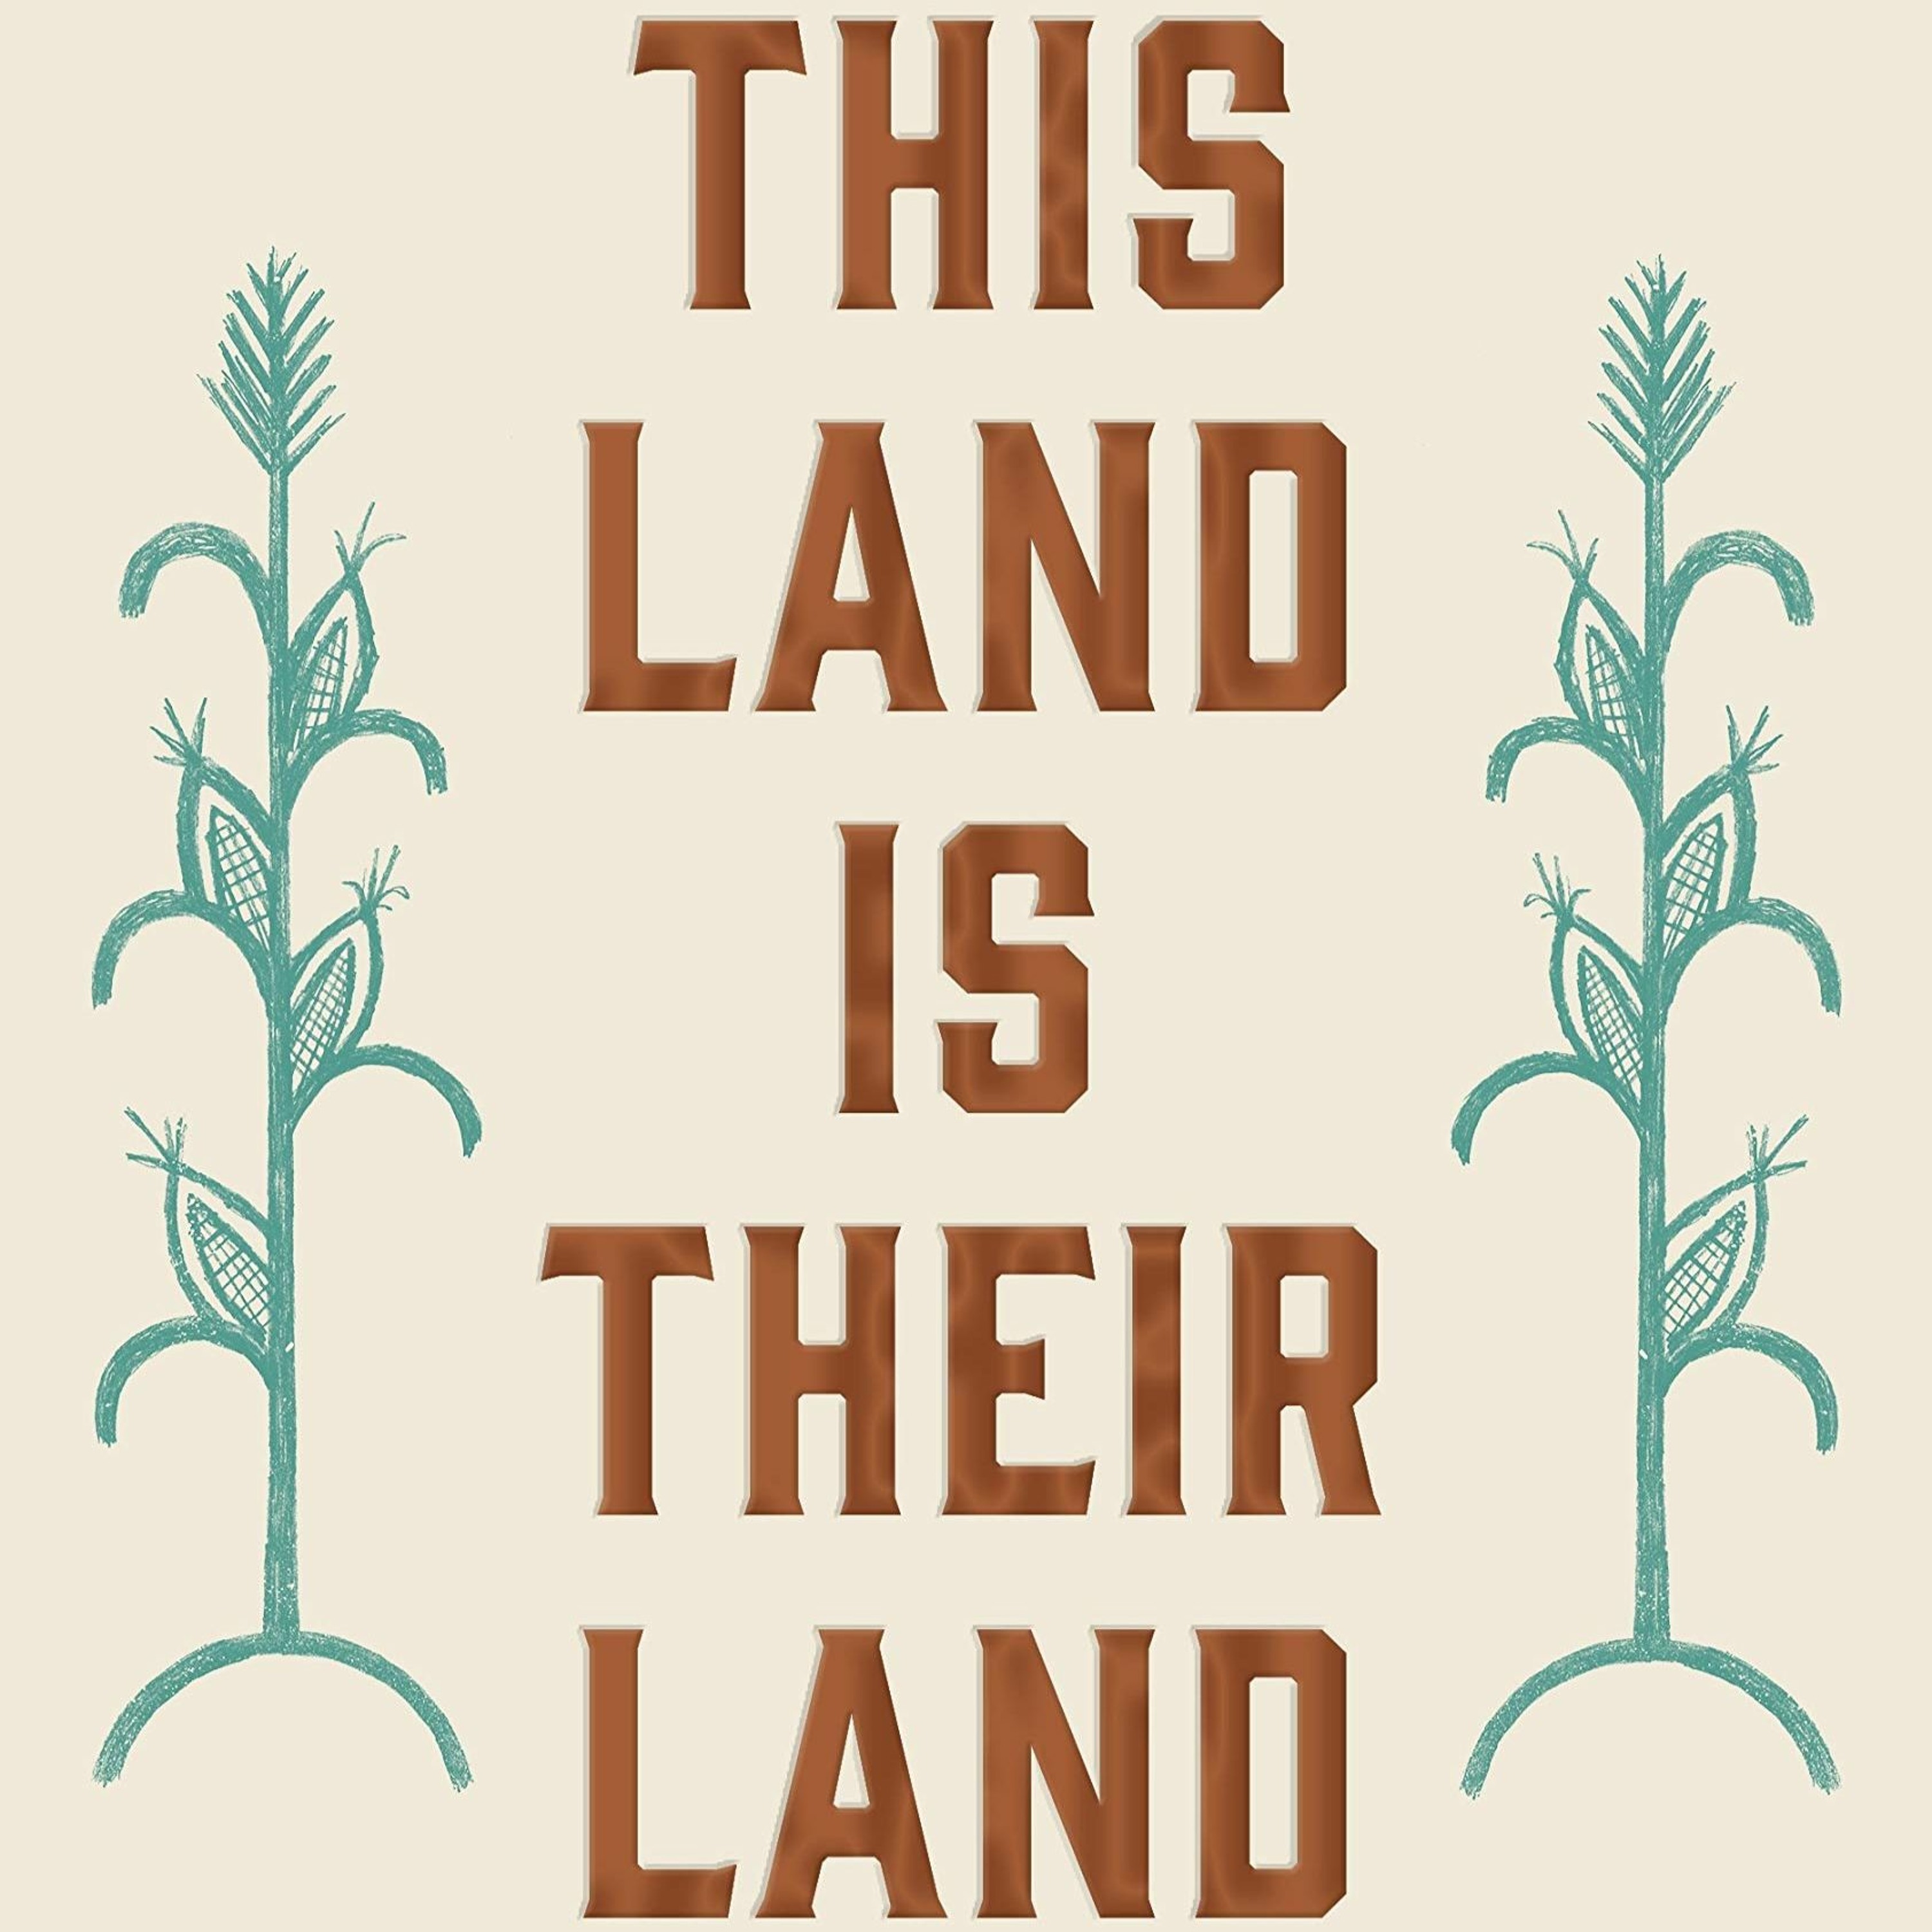 David J. Silverman, “This Land is Their Land”